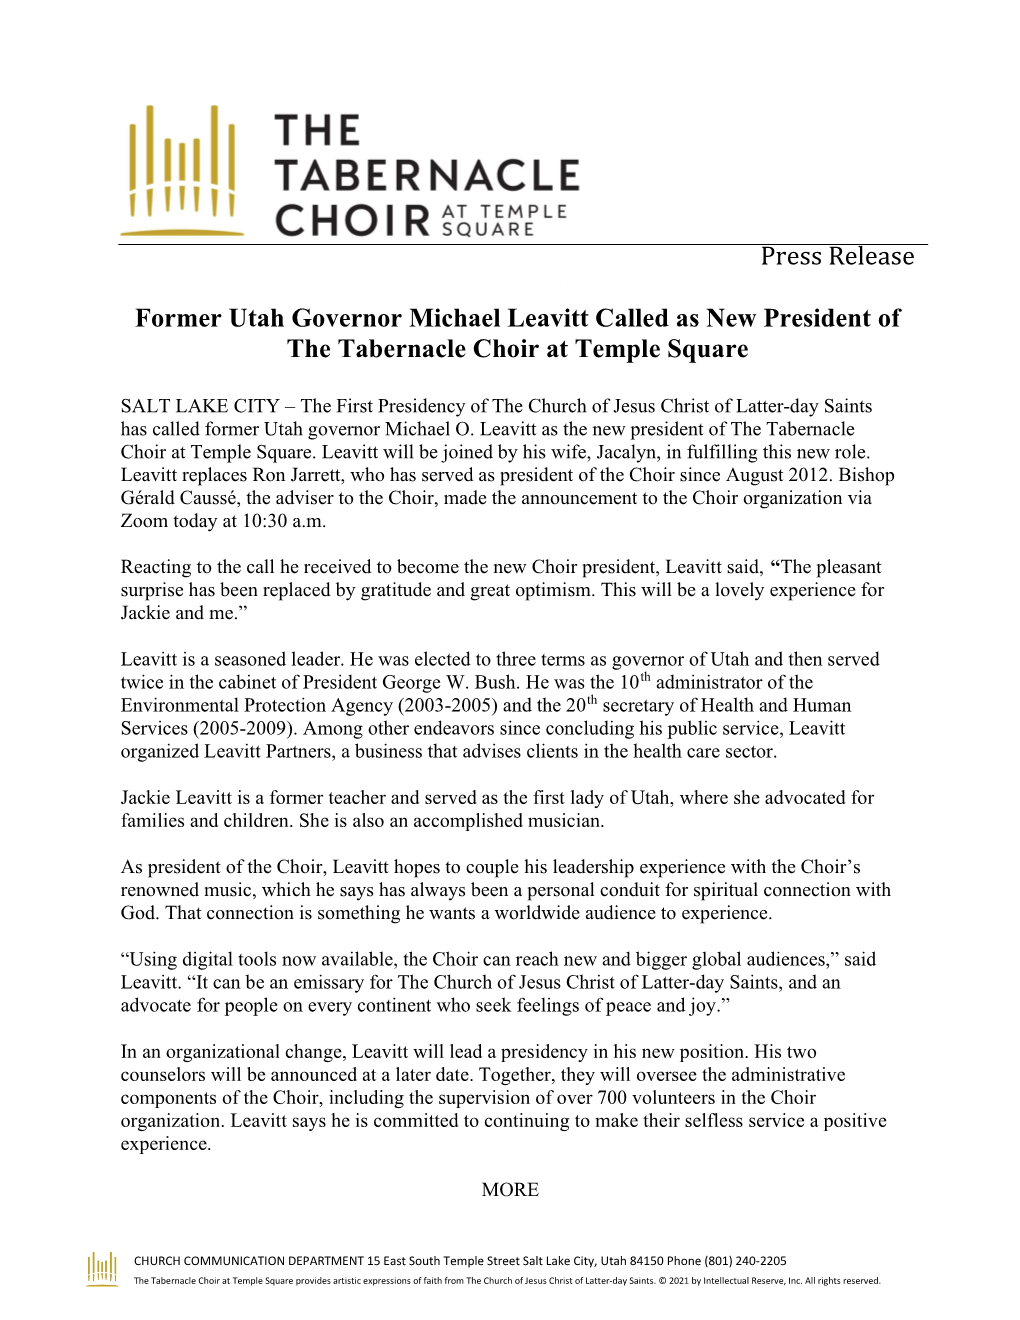 Press Release Former Utah Governor Michael Leavitt Called As New